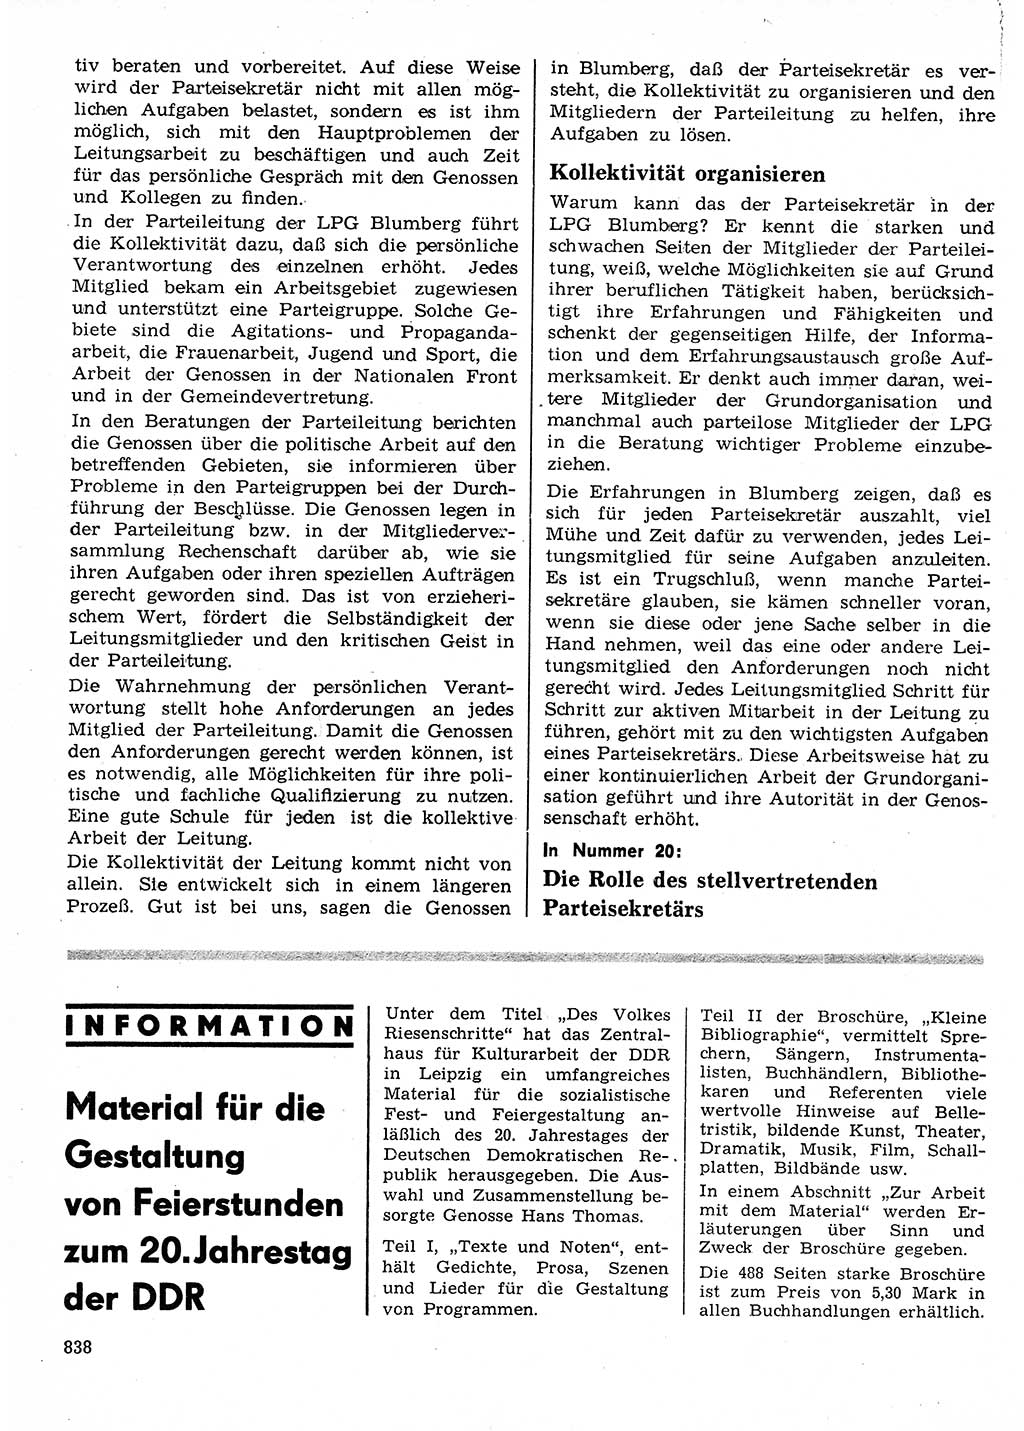 Neuer Weg (NW), Organ des Zentralkomitees (ZK) der SED (Sozialistische Einheitspartei Deutschlands) für Fragen des Parteilebens, 24. Jahrgang [Deutsche Demokratische Republik (DDR)] 1969, Seite 838 (NW ZK SED DDR 1969, S. 838)